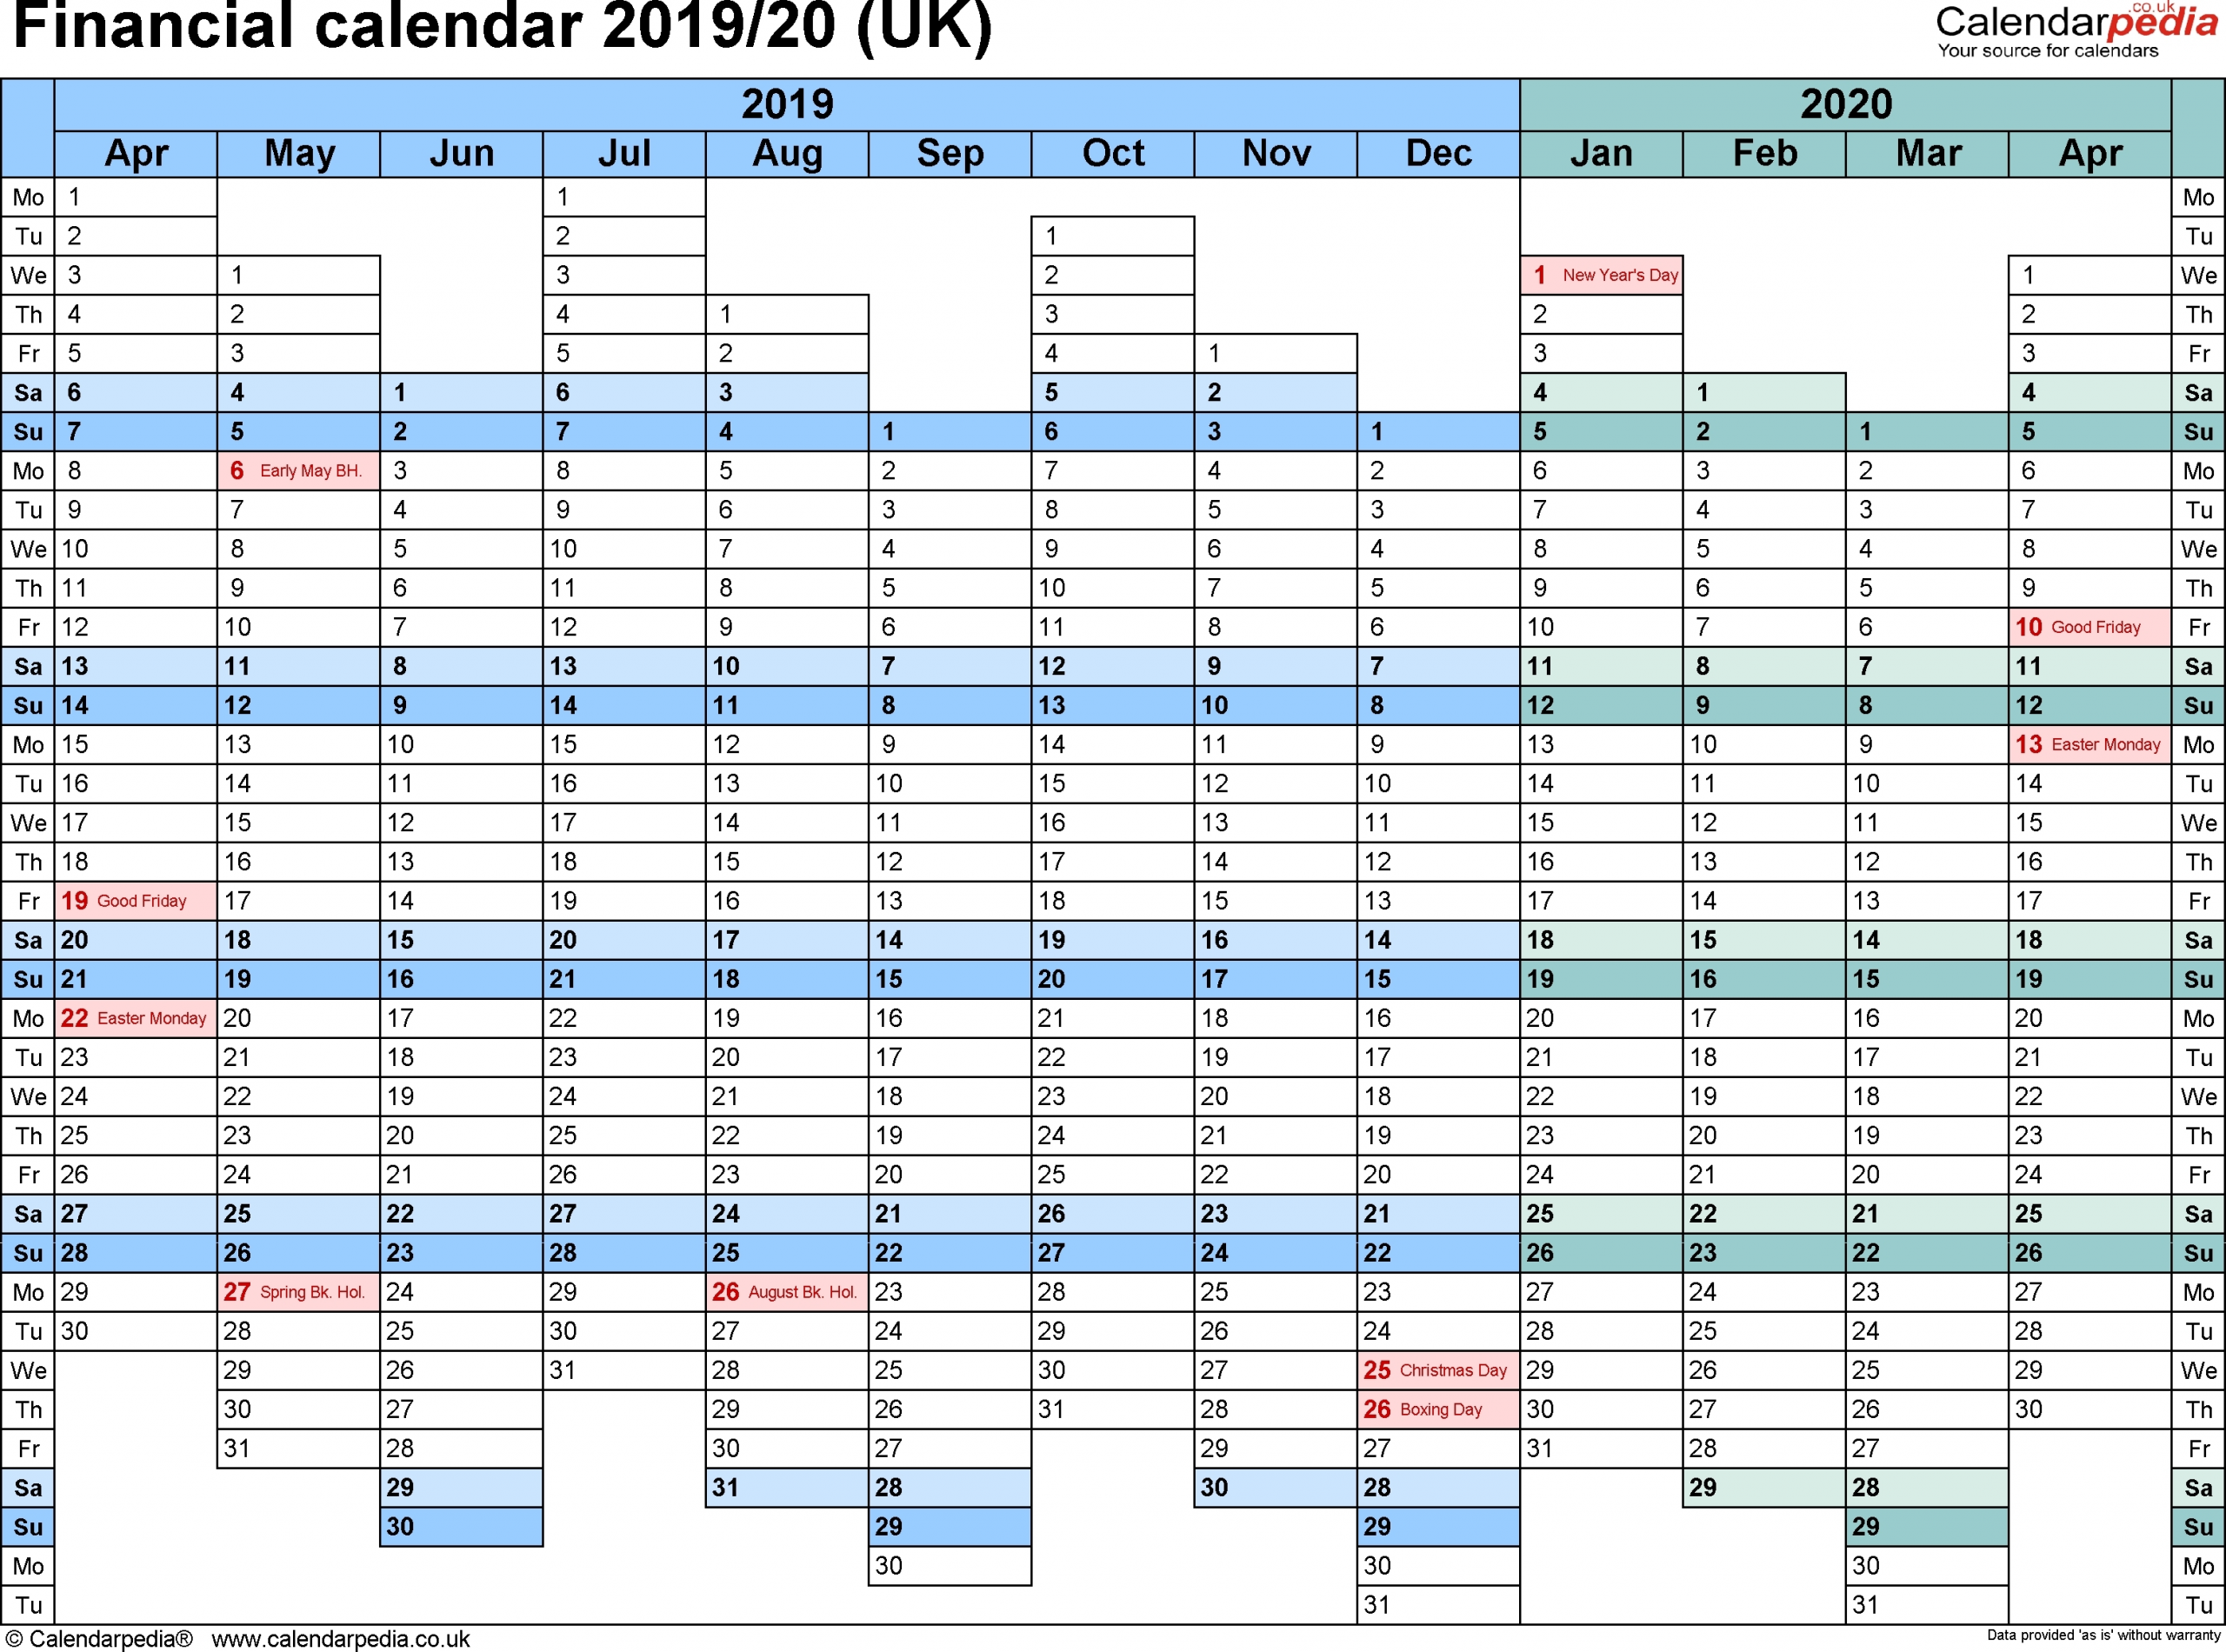 2019-2020 Calendar Financial Week Numbers - Calendar regarding Financial Calendar 2019-2020 In Weeks